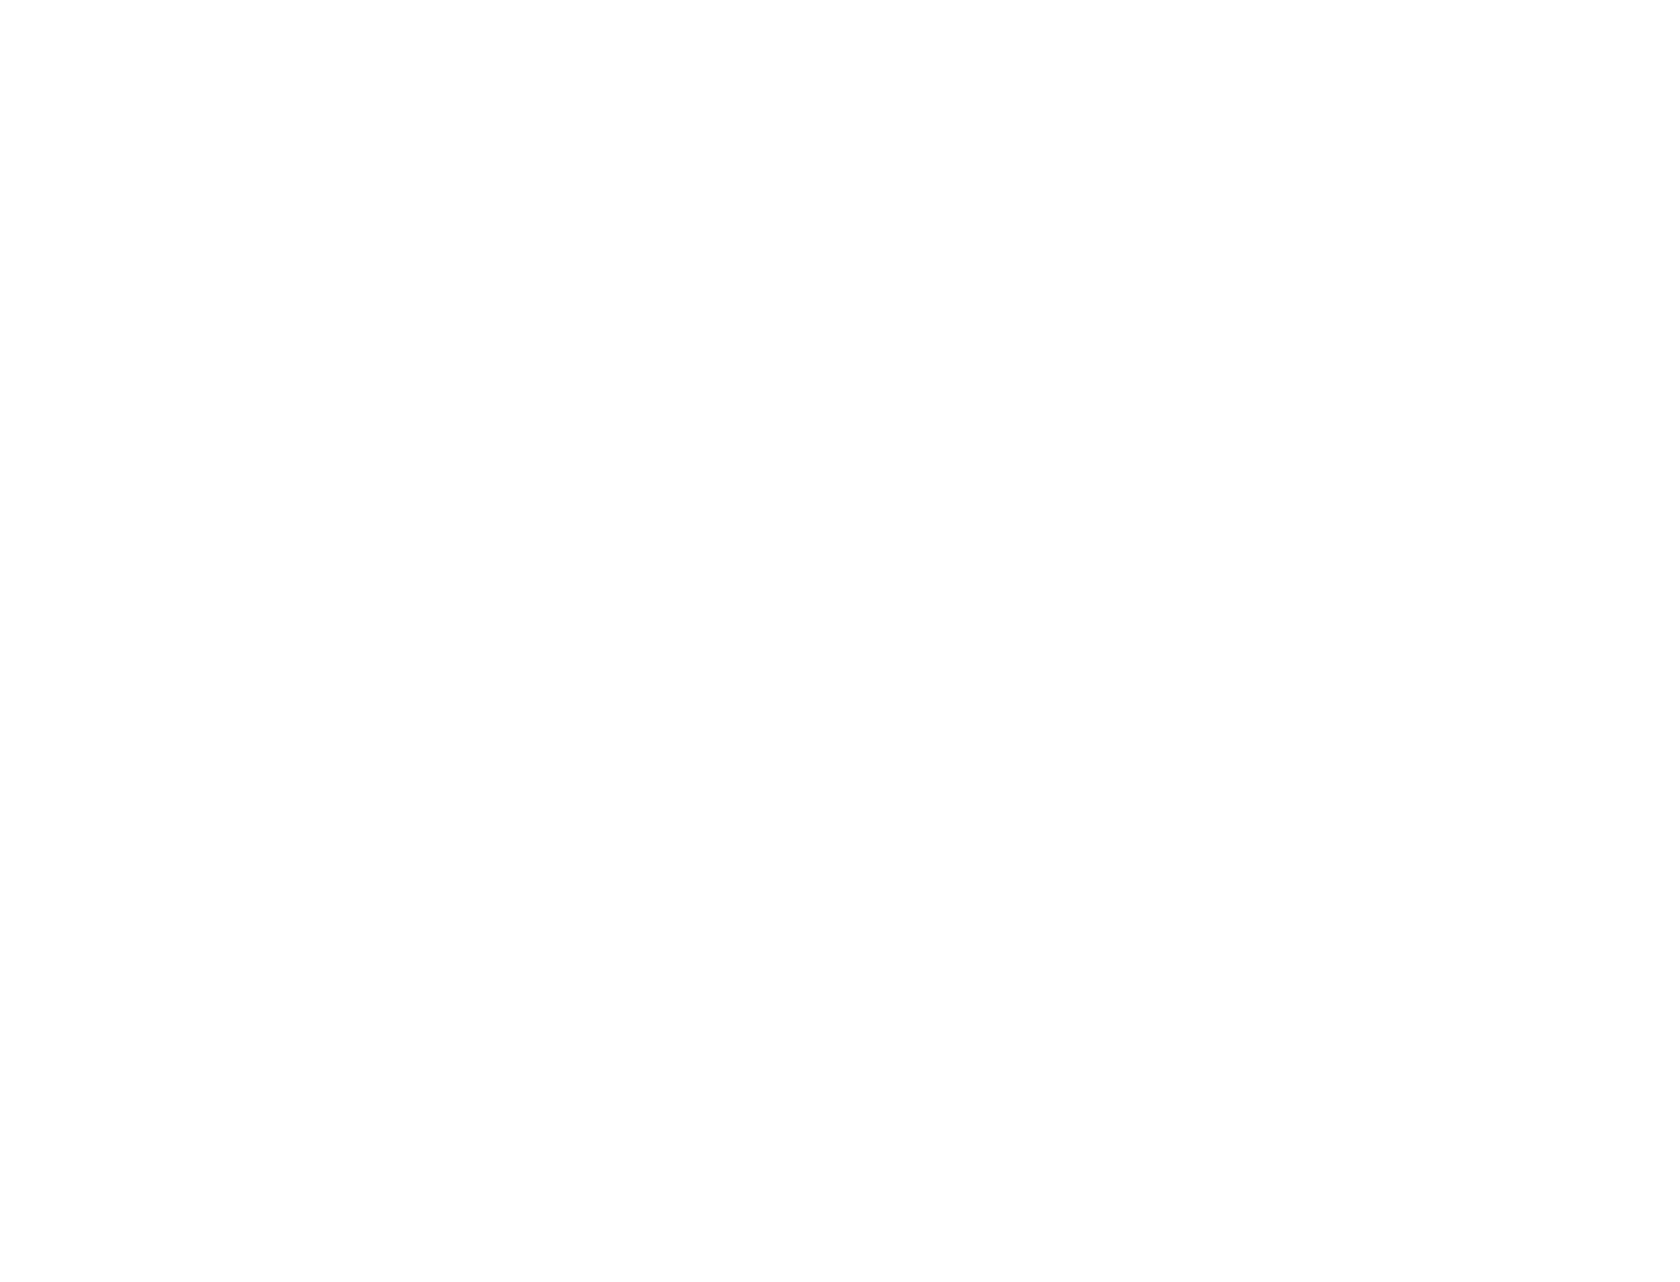 Без названия. Почаинский овраг, Нижний Новгород, Россия, 2019. Размер в раме 30х40 